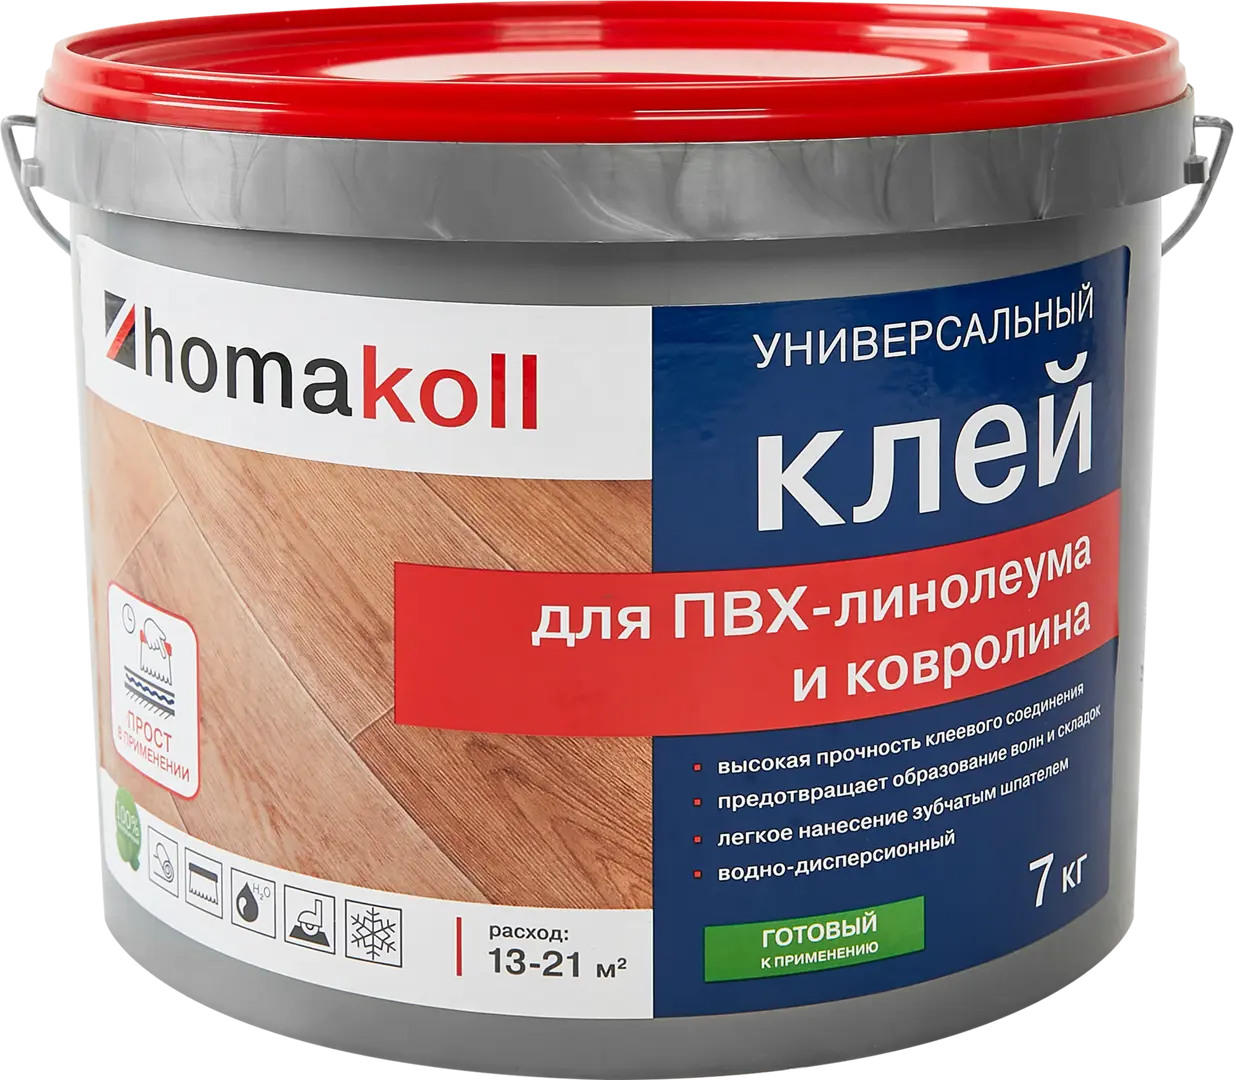 Клей универсальный для линолеума и ковролина Хомакол (Homakoll) 7 кг клей универсальный для линолеума и ковролина хомакол homakoll 7 кг